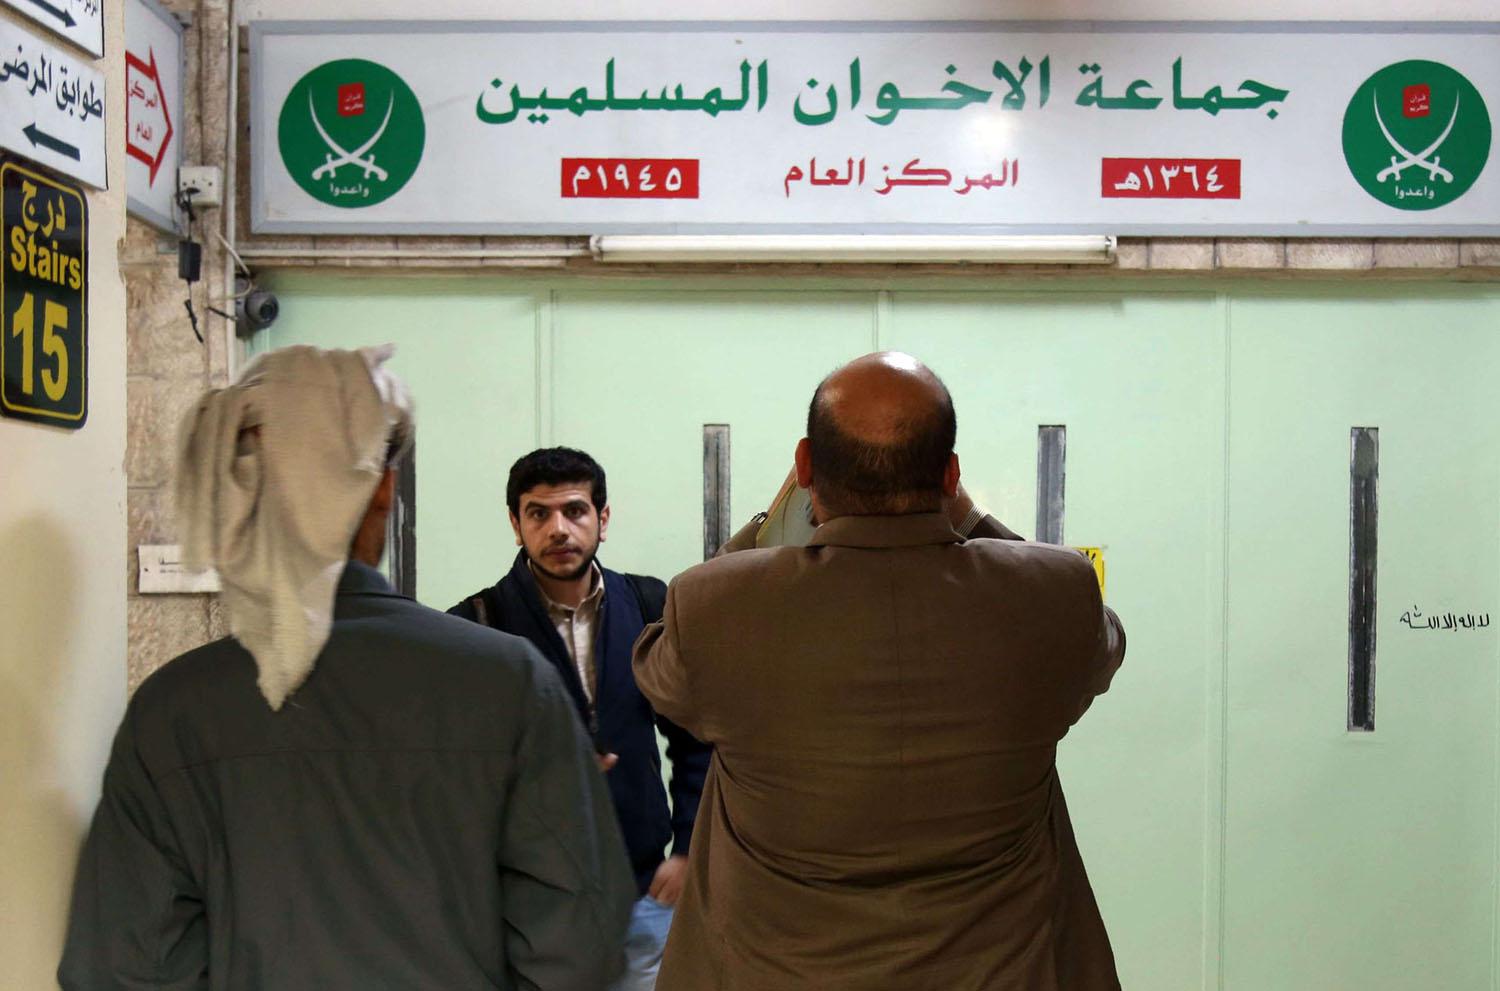 مدخل مقر الأخوان في الأردن بعد اغلاقه من الشرطة